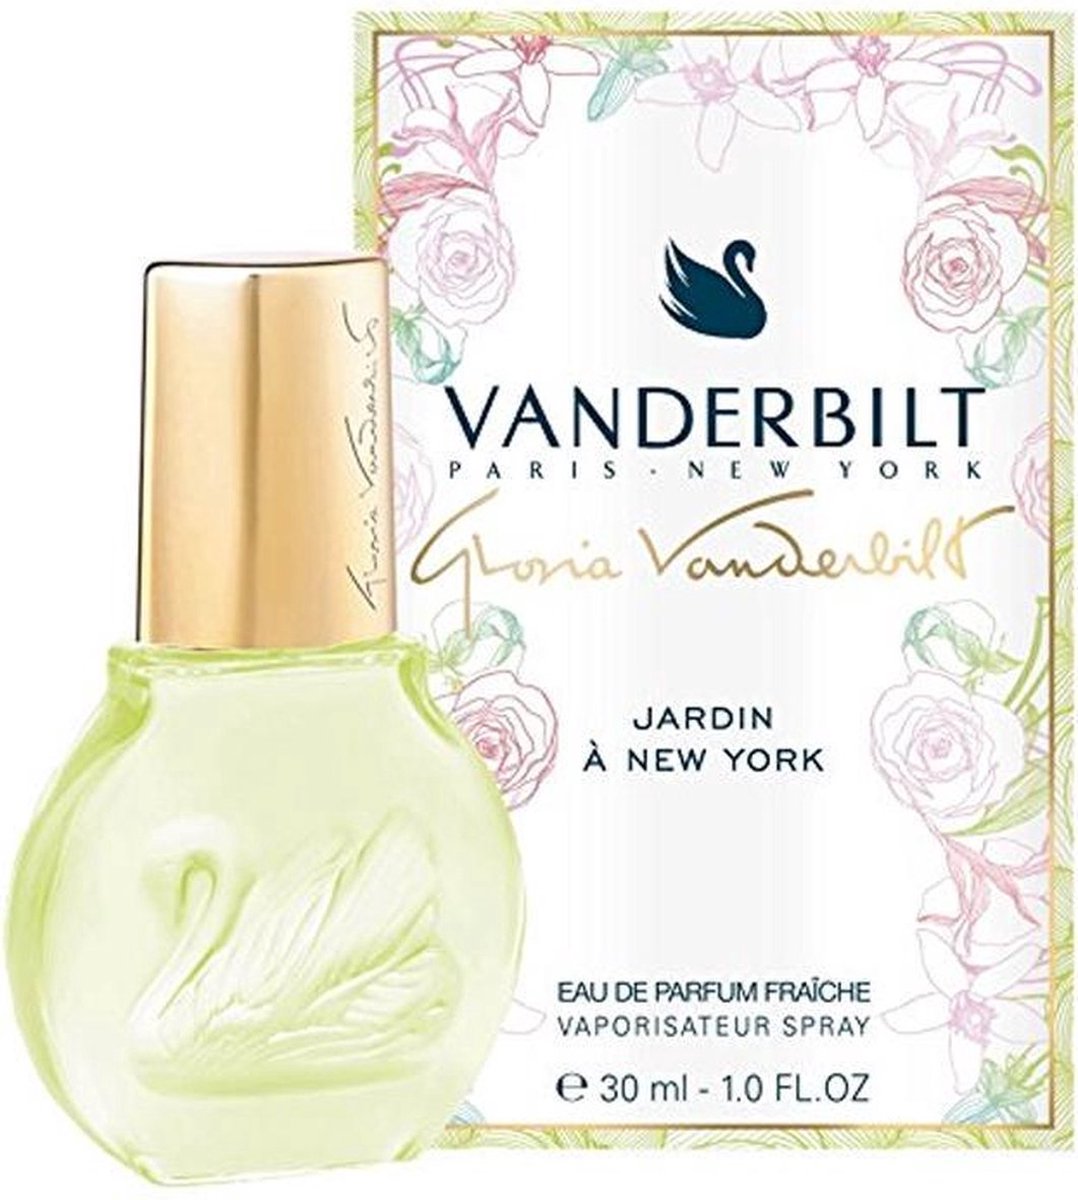 Gloria Vanderbilt Garden A New York Fraiche - 100ml - Eau de parfum